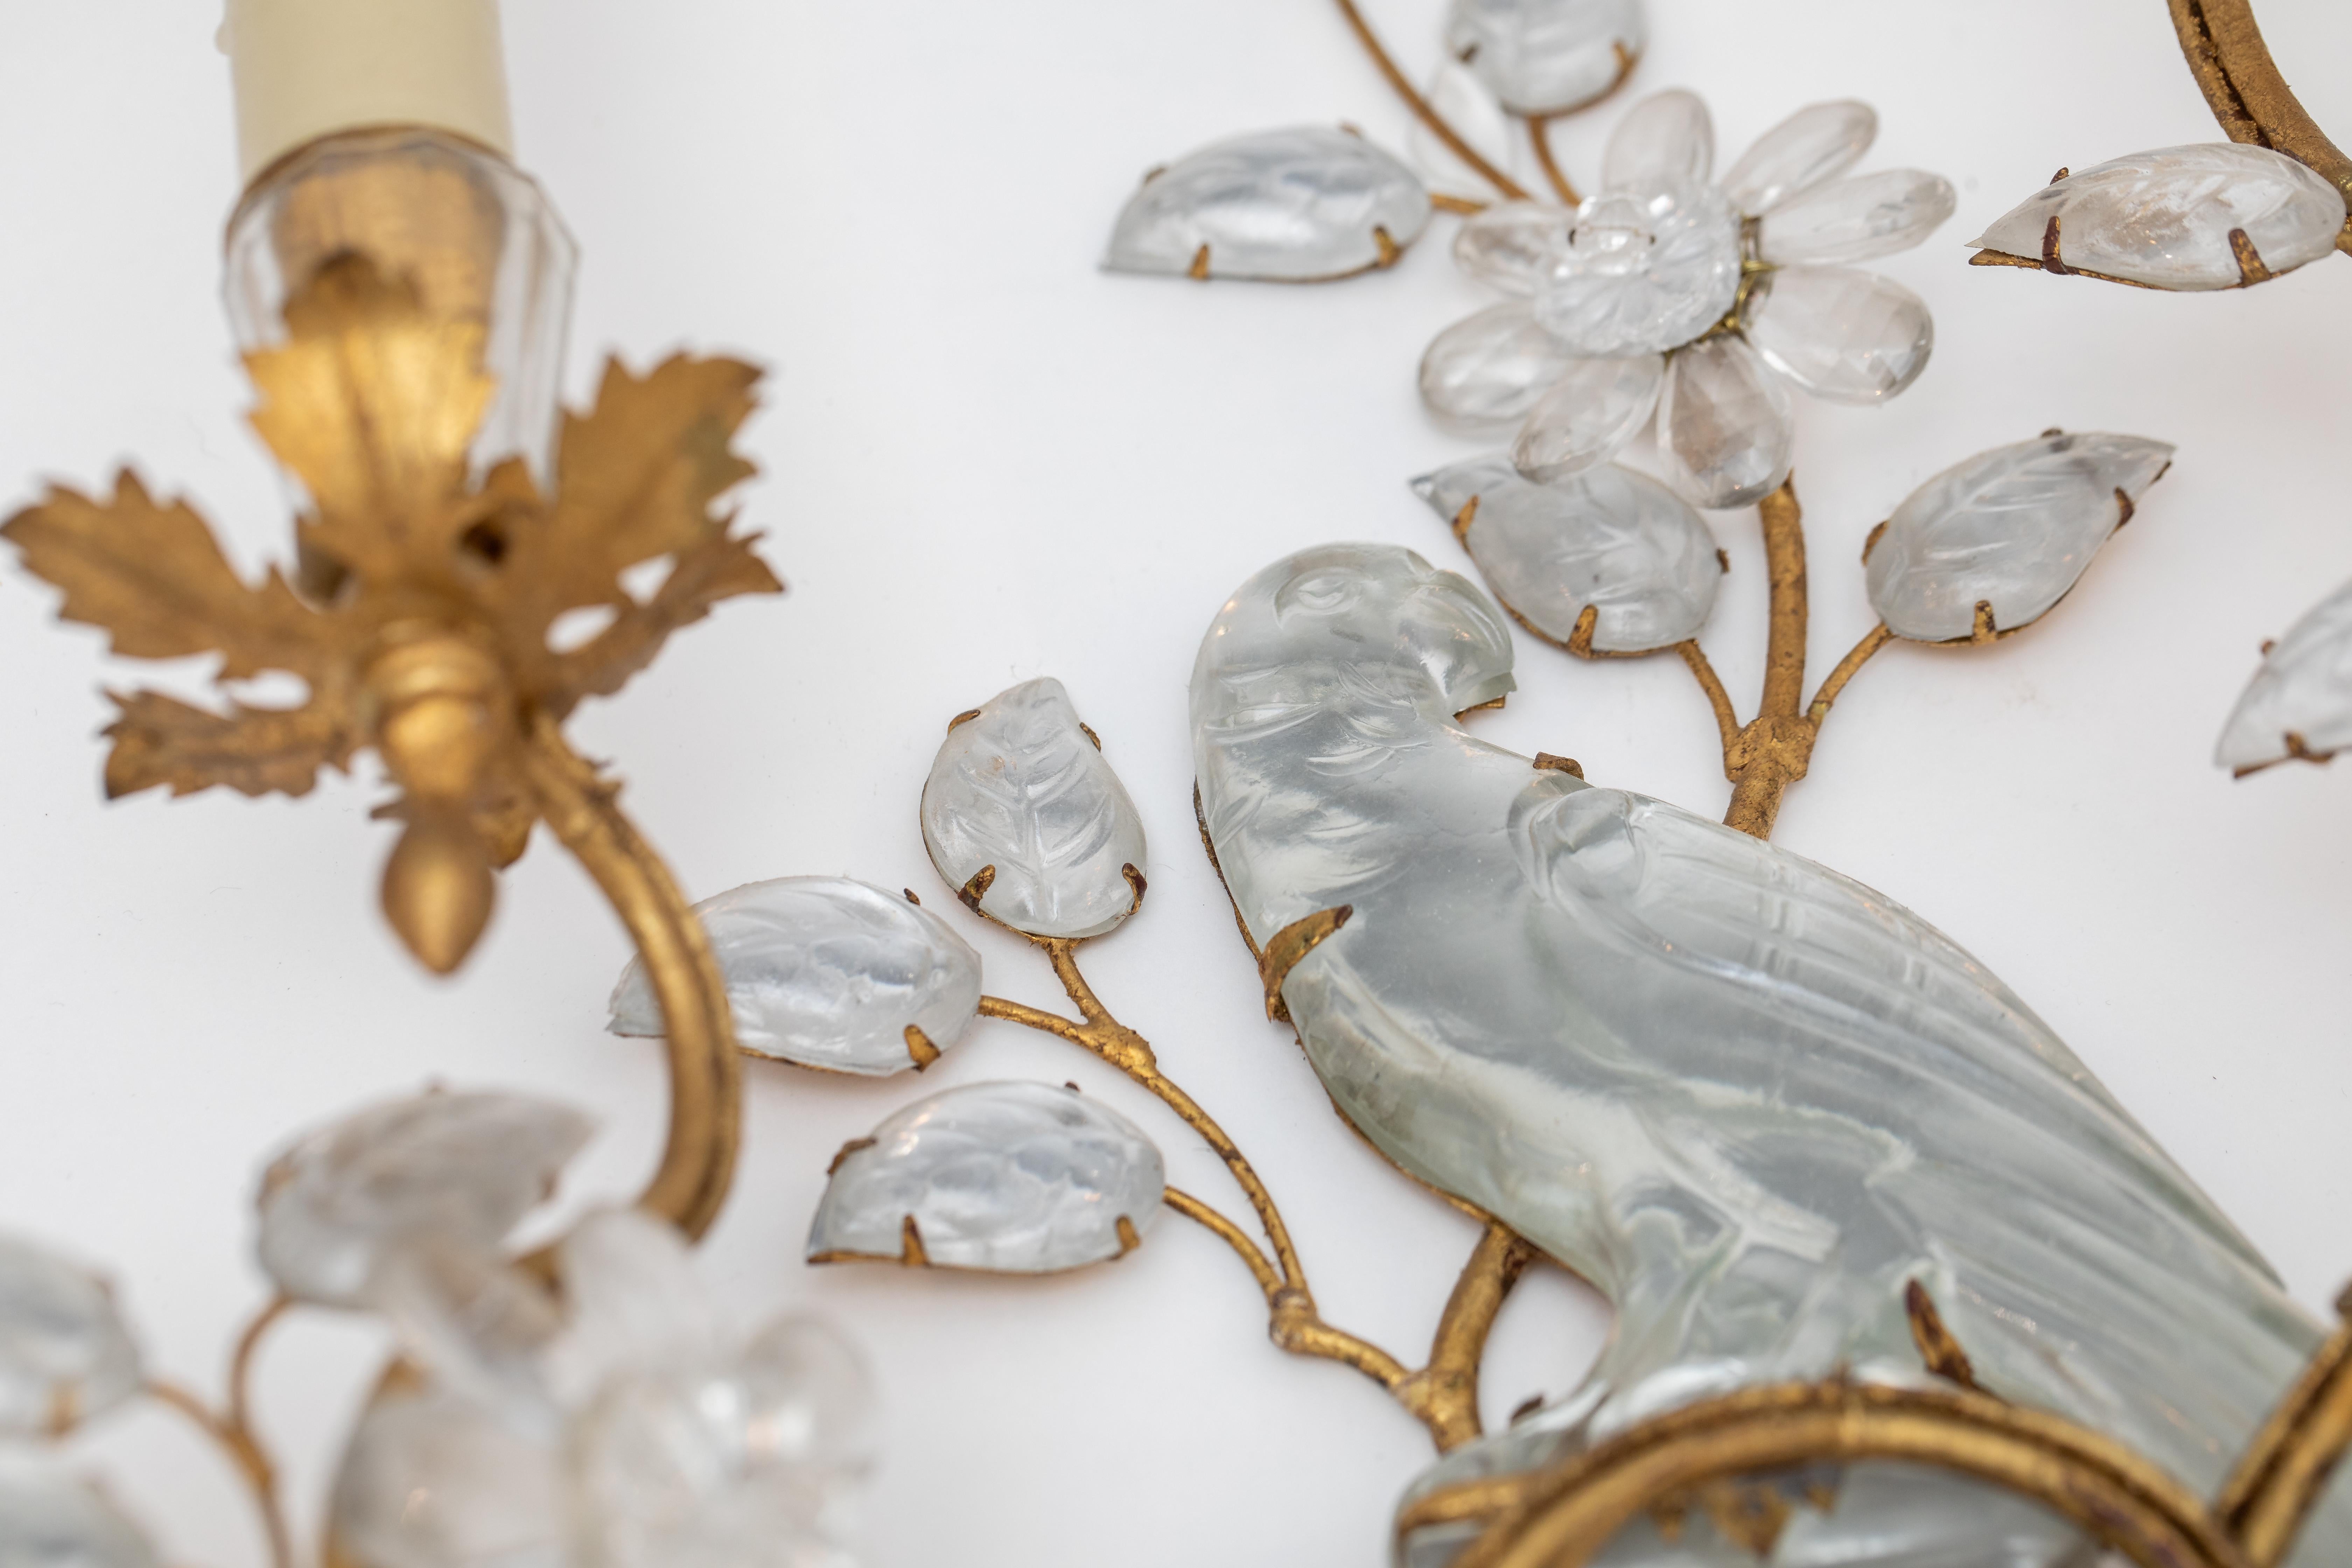 Paar Wandleuchter von Maison Bagues` Paris, Frankreich , aus vergoldetem Eisen und Kristall mit Papageien.
Die schönen und besonderen Wandleuchter befinden sich in einem sehr guten Zustand, wurden wohl in den achtziger Jahren angeschafft.  